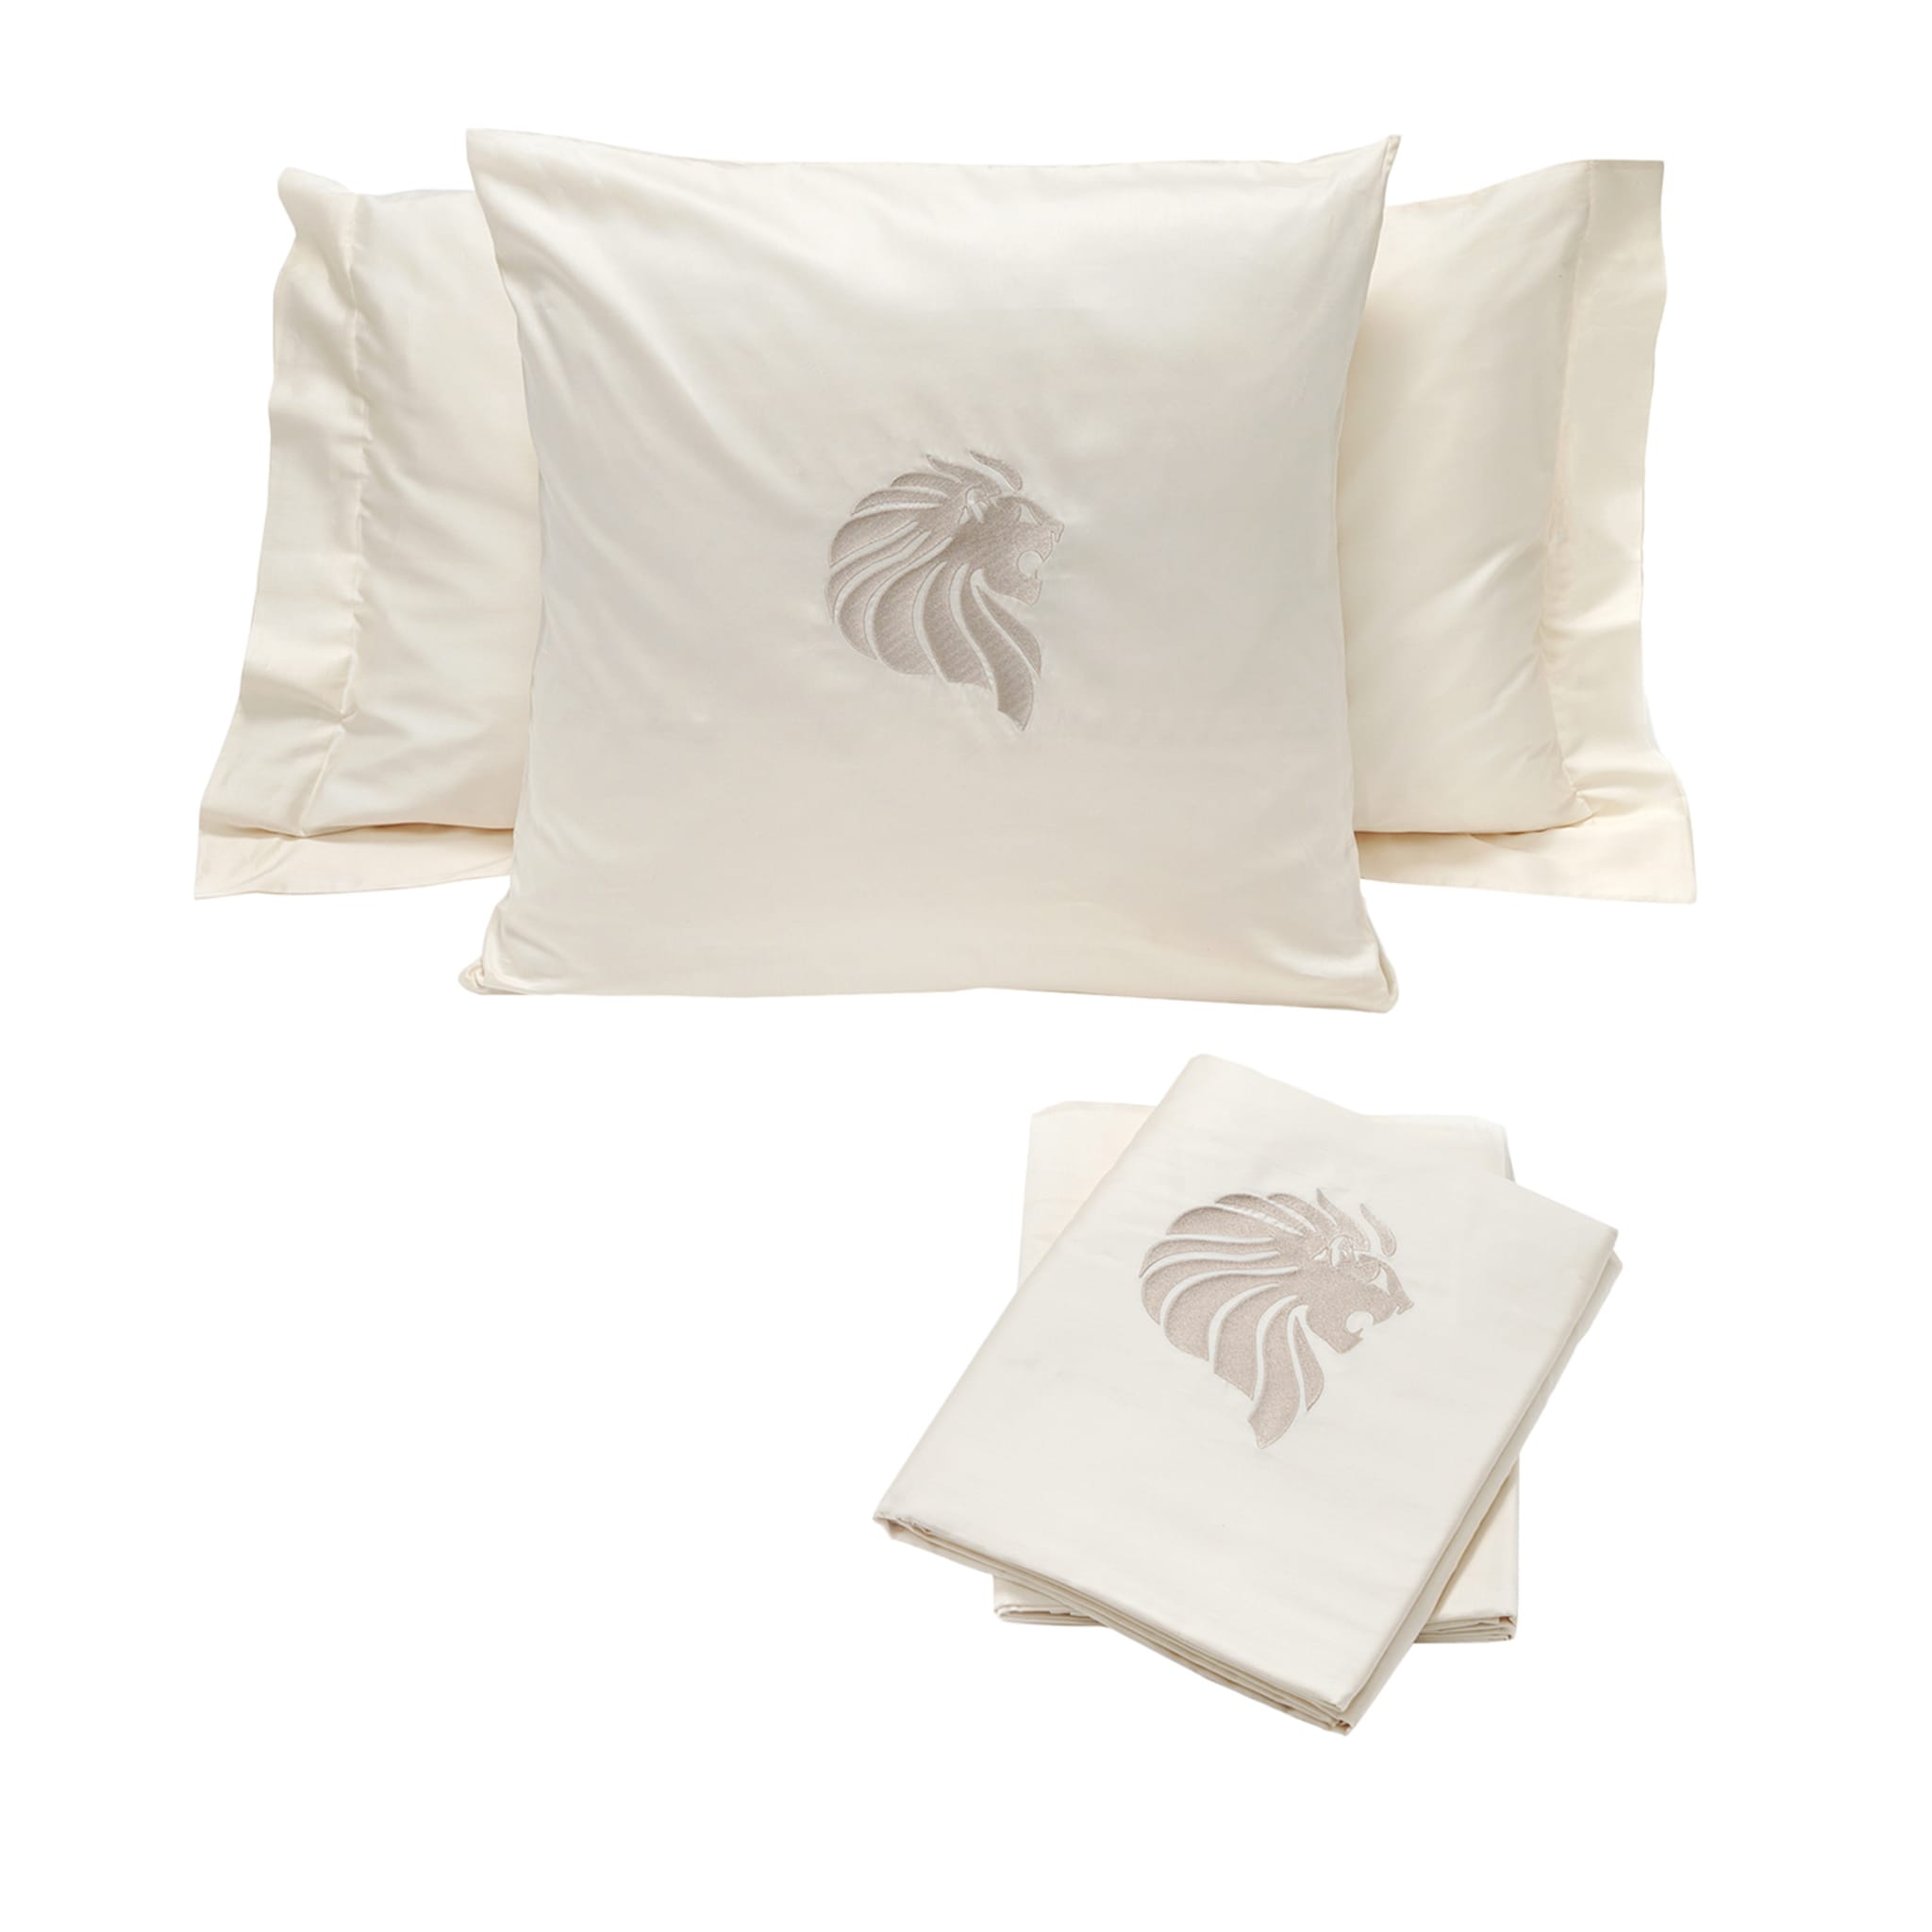 Beige Bed Linen & Pillows Set #1 - Main view